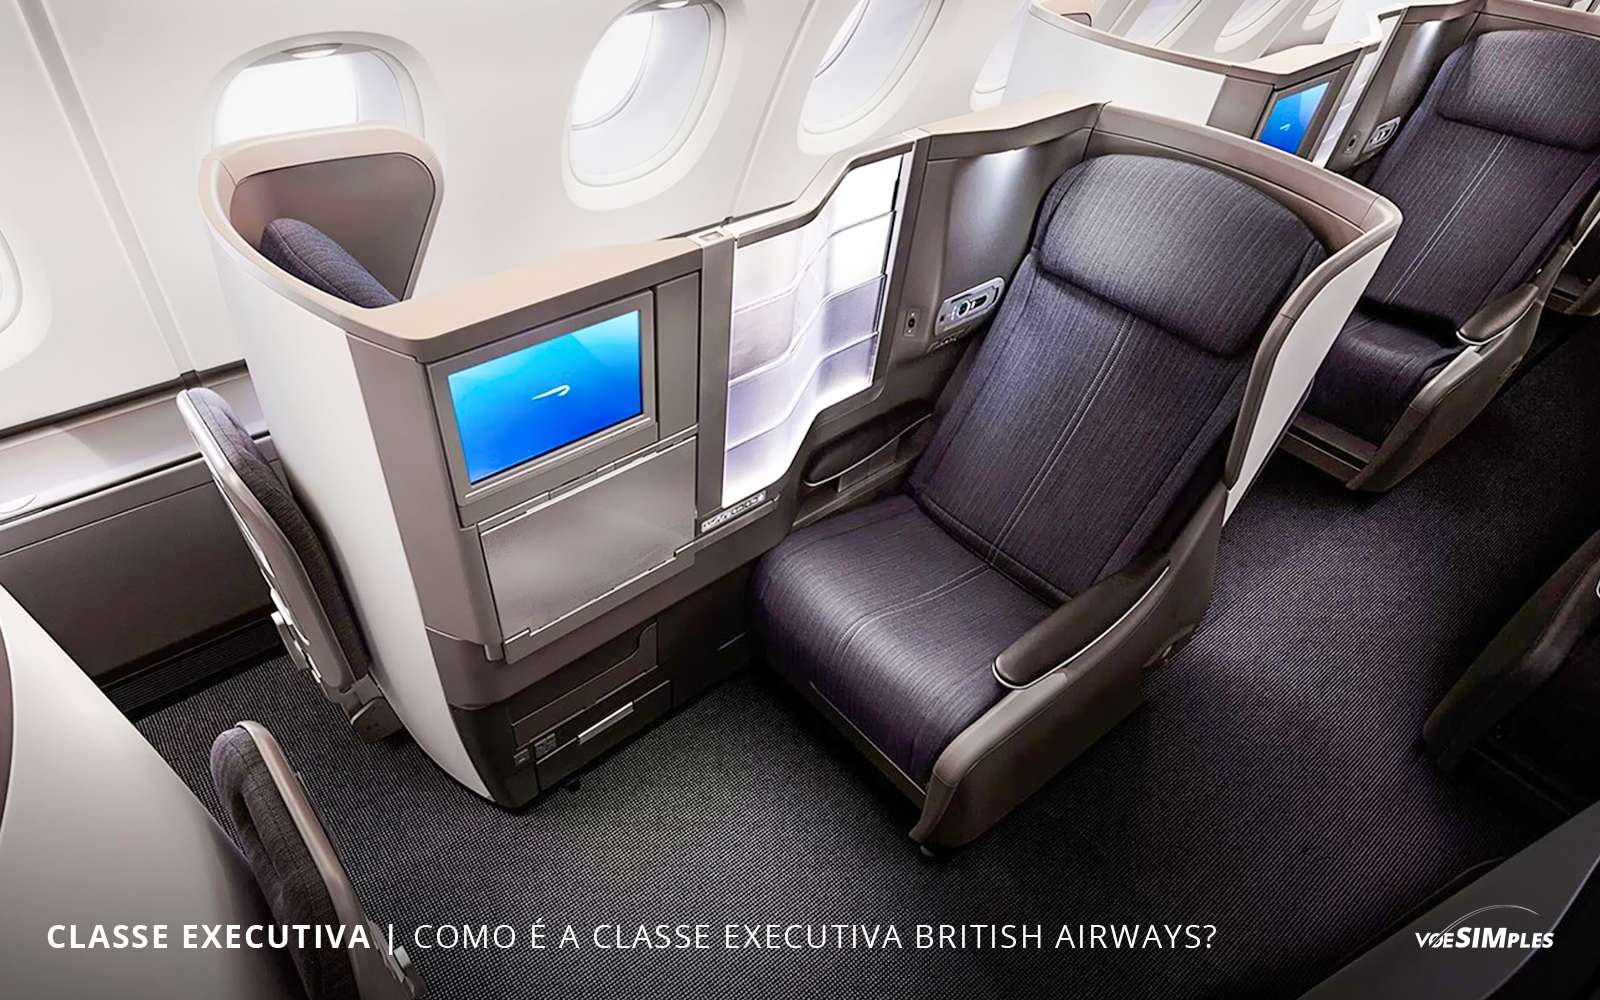 Ба класс. British Airways Boeing 777 бизнес класс. British Airways Business class Airbus. A380 самолет British Airways салон. British Airways a380 Business class.